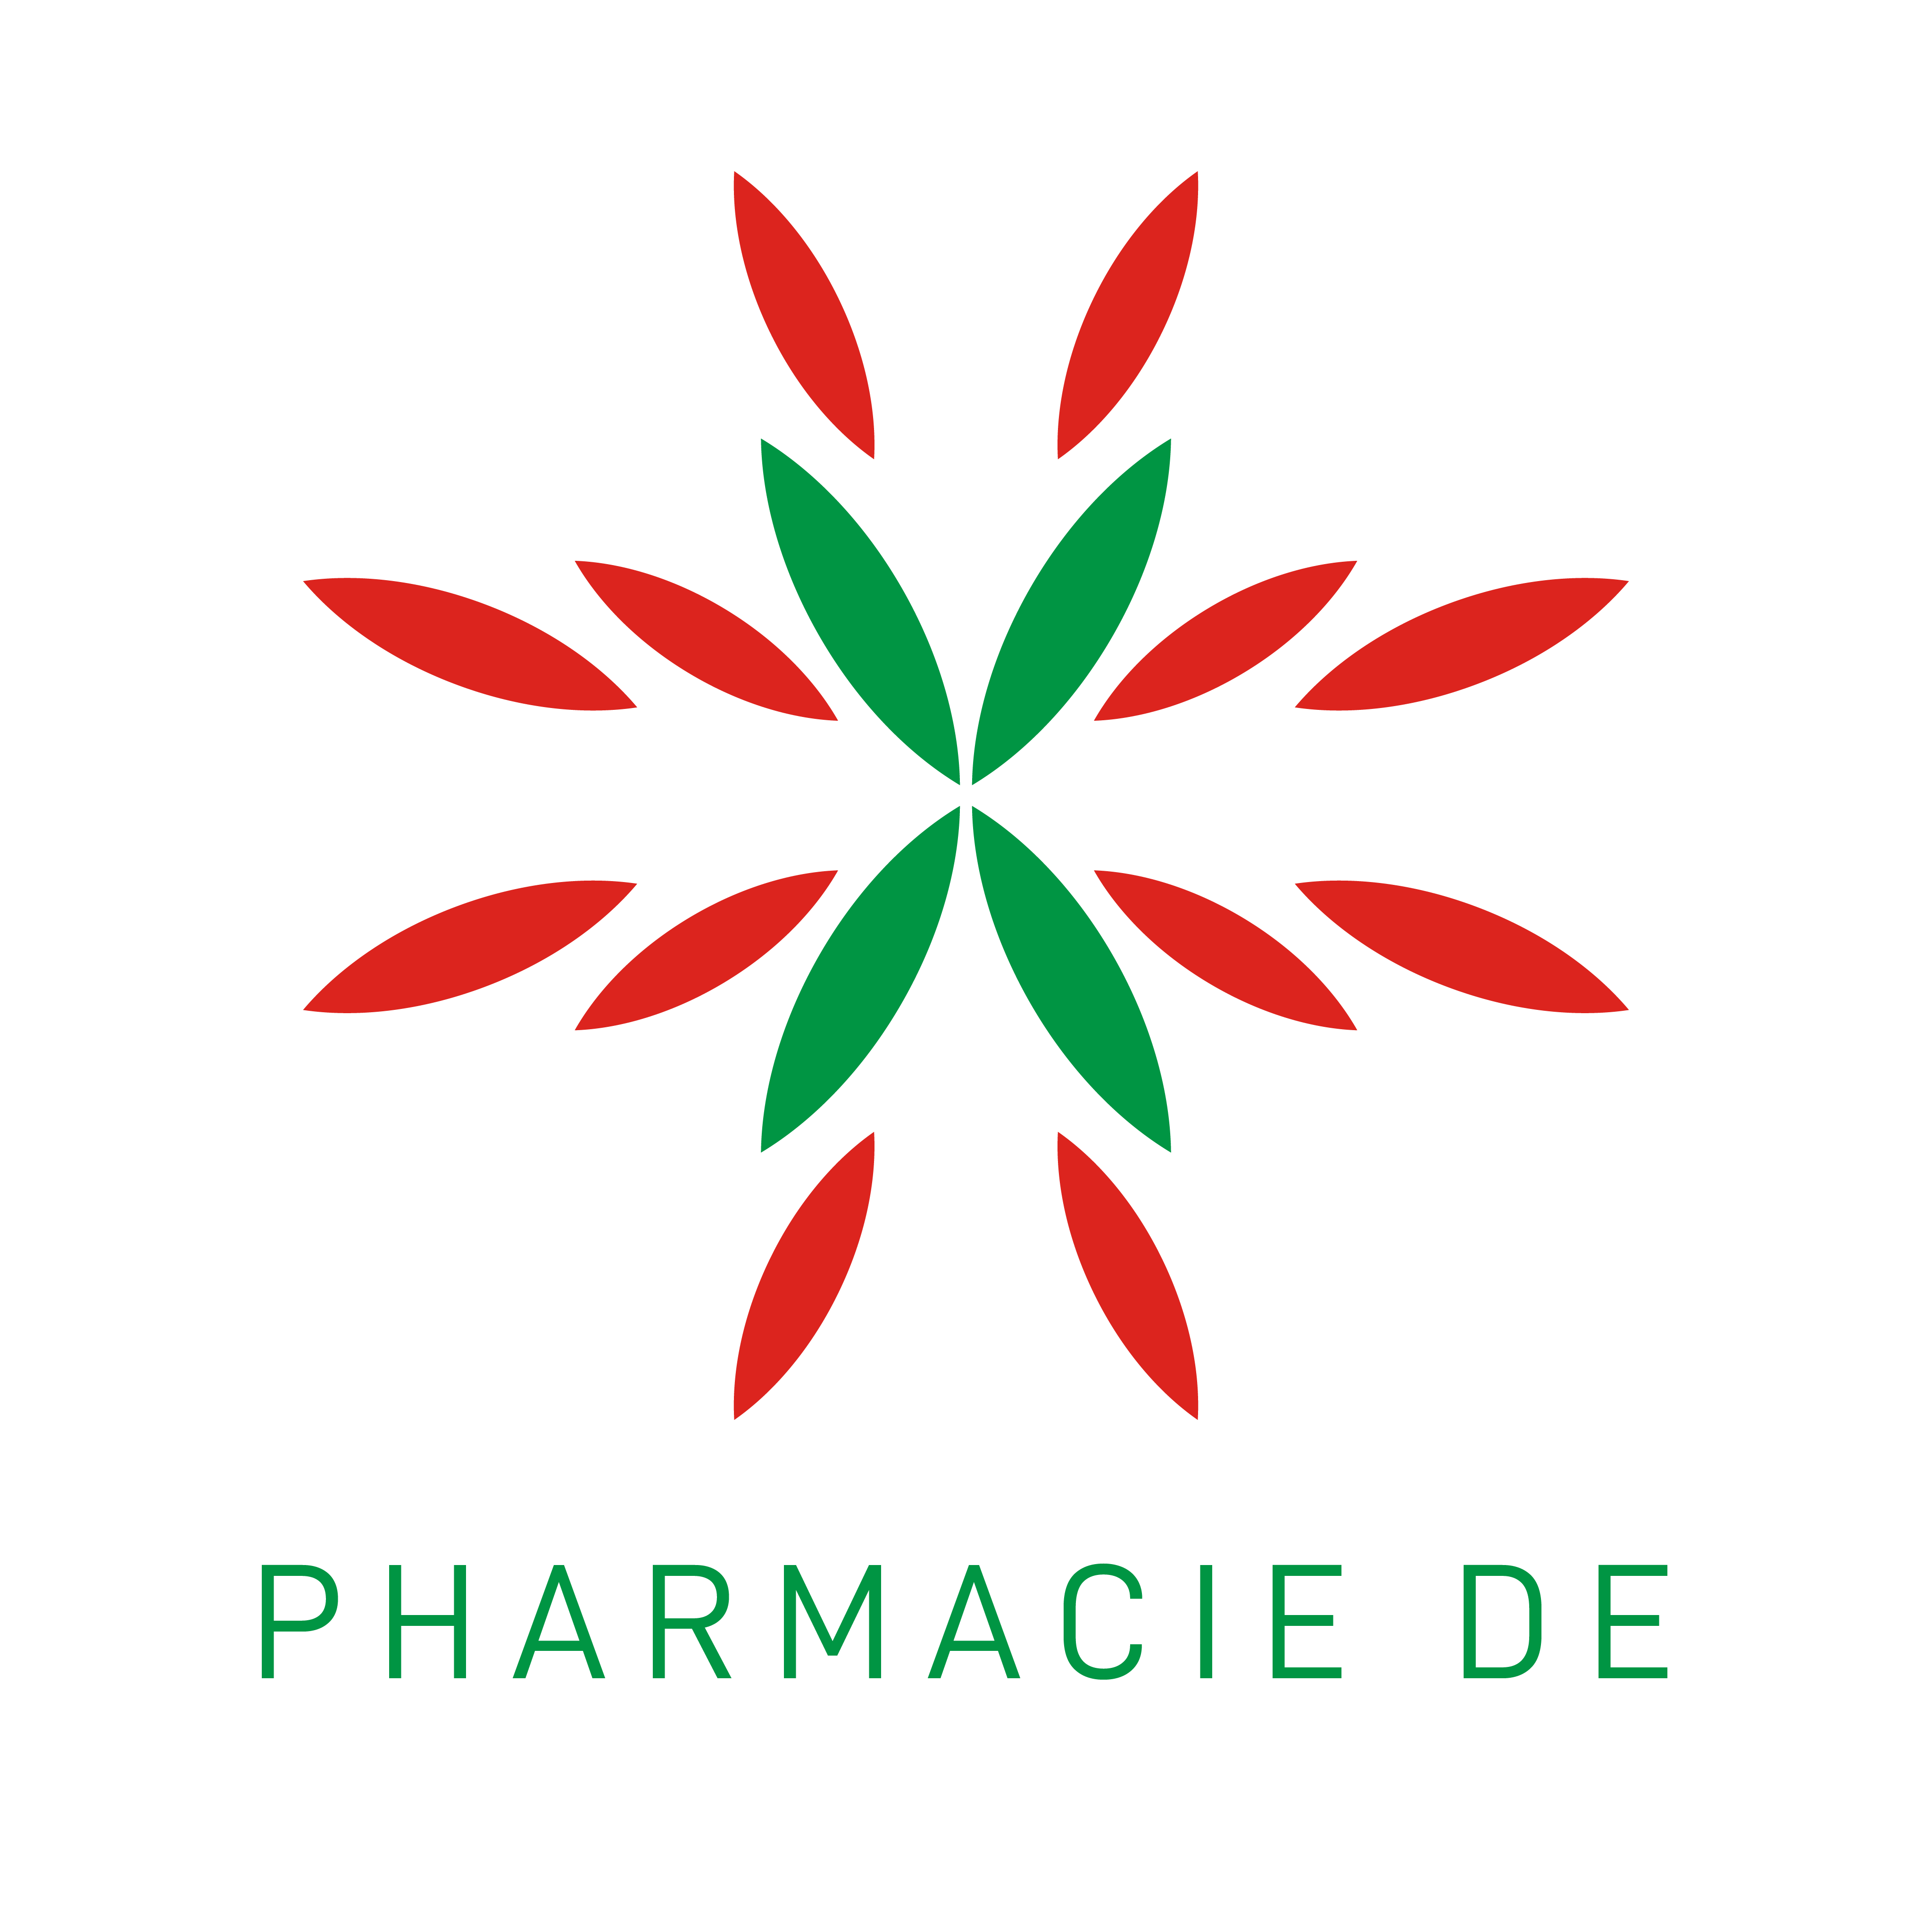 Pharmacie de Villefranque - Logo original transparent